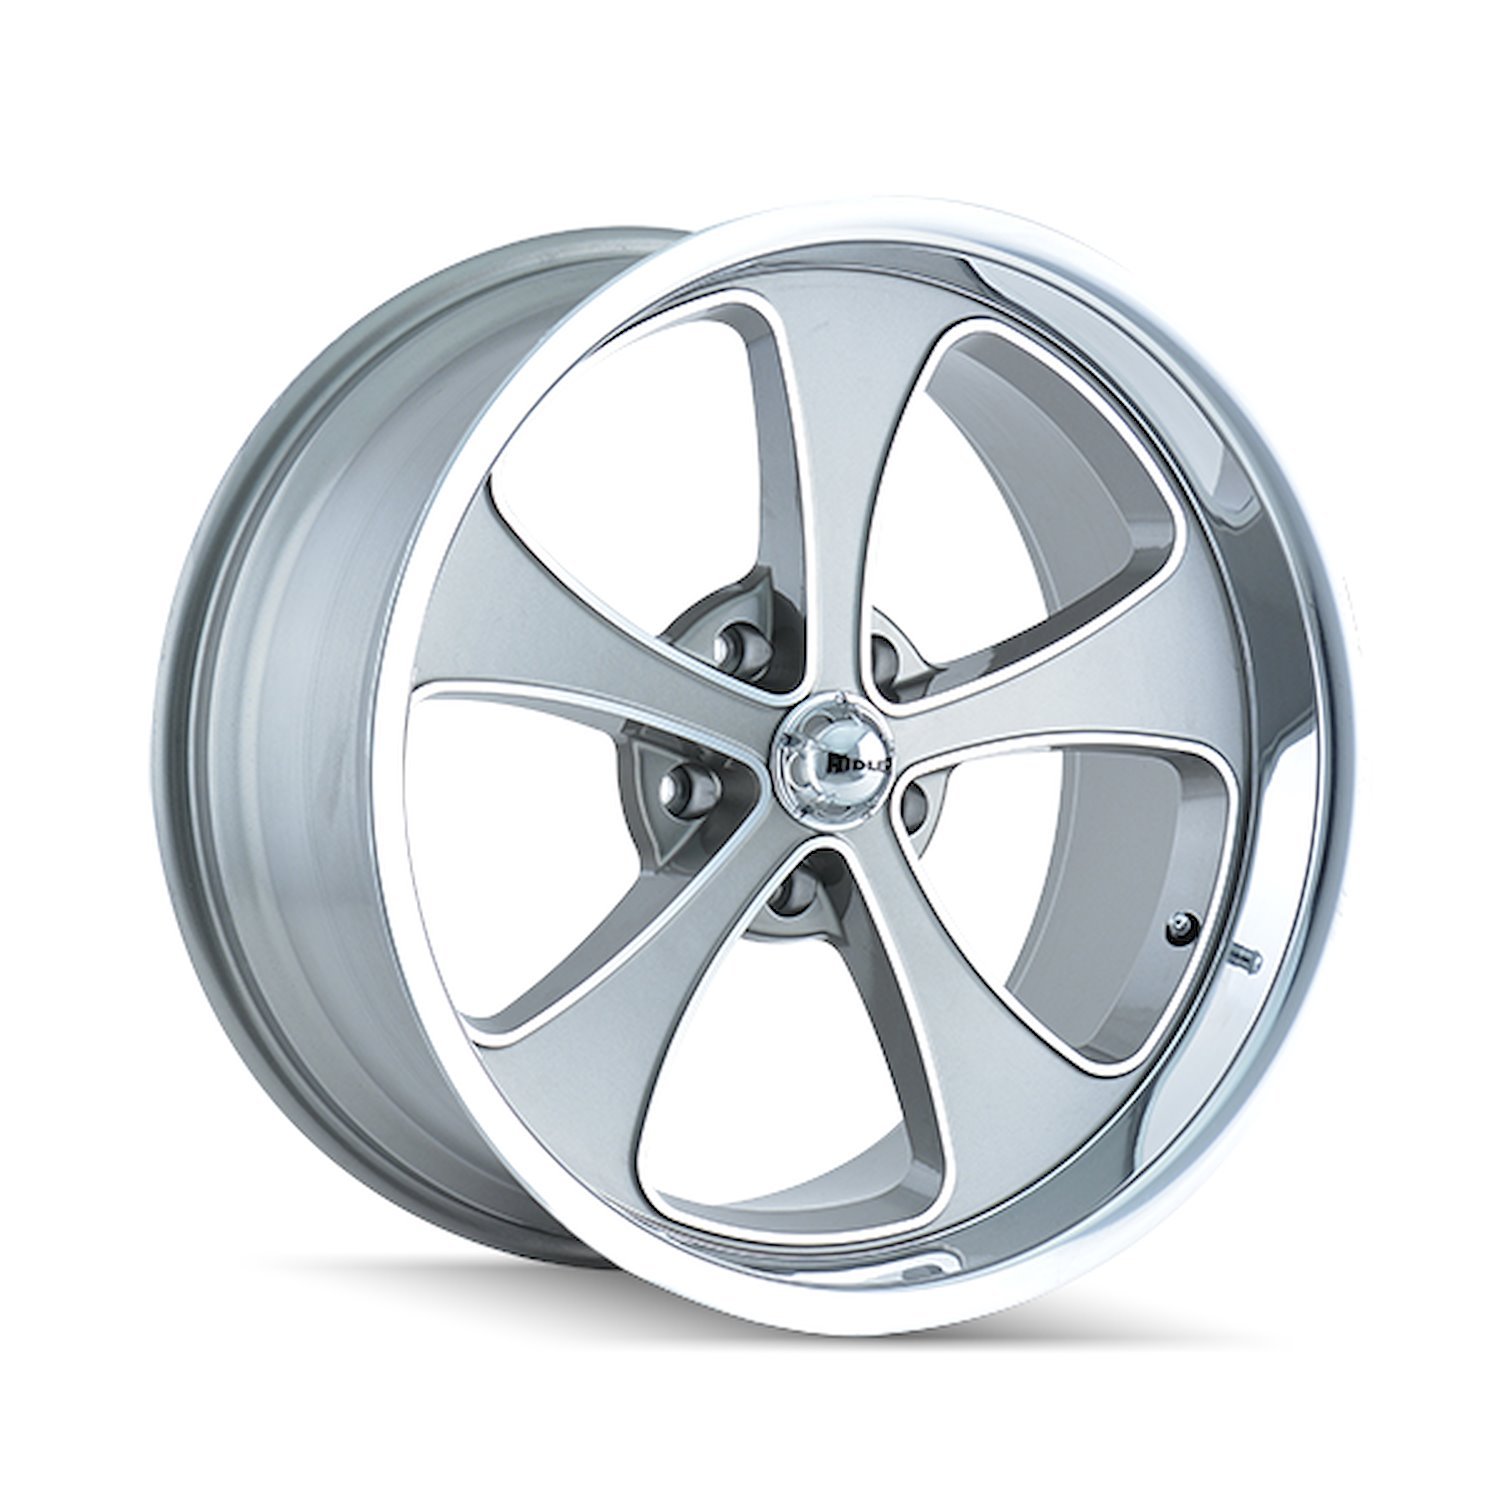 645-7873GP 645-Series Wheel [Size: 17" x 8"] Gloss Grey Machined/Polished Finish